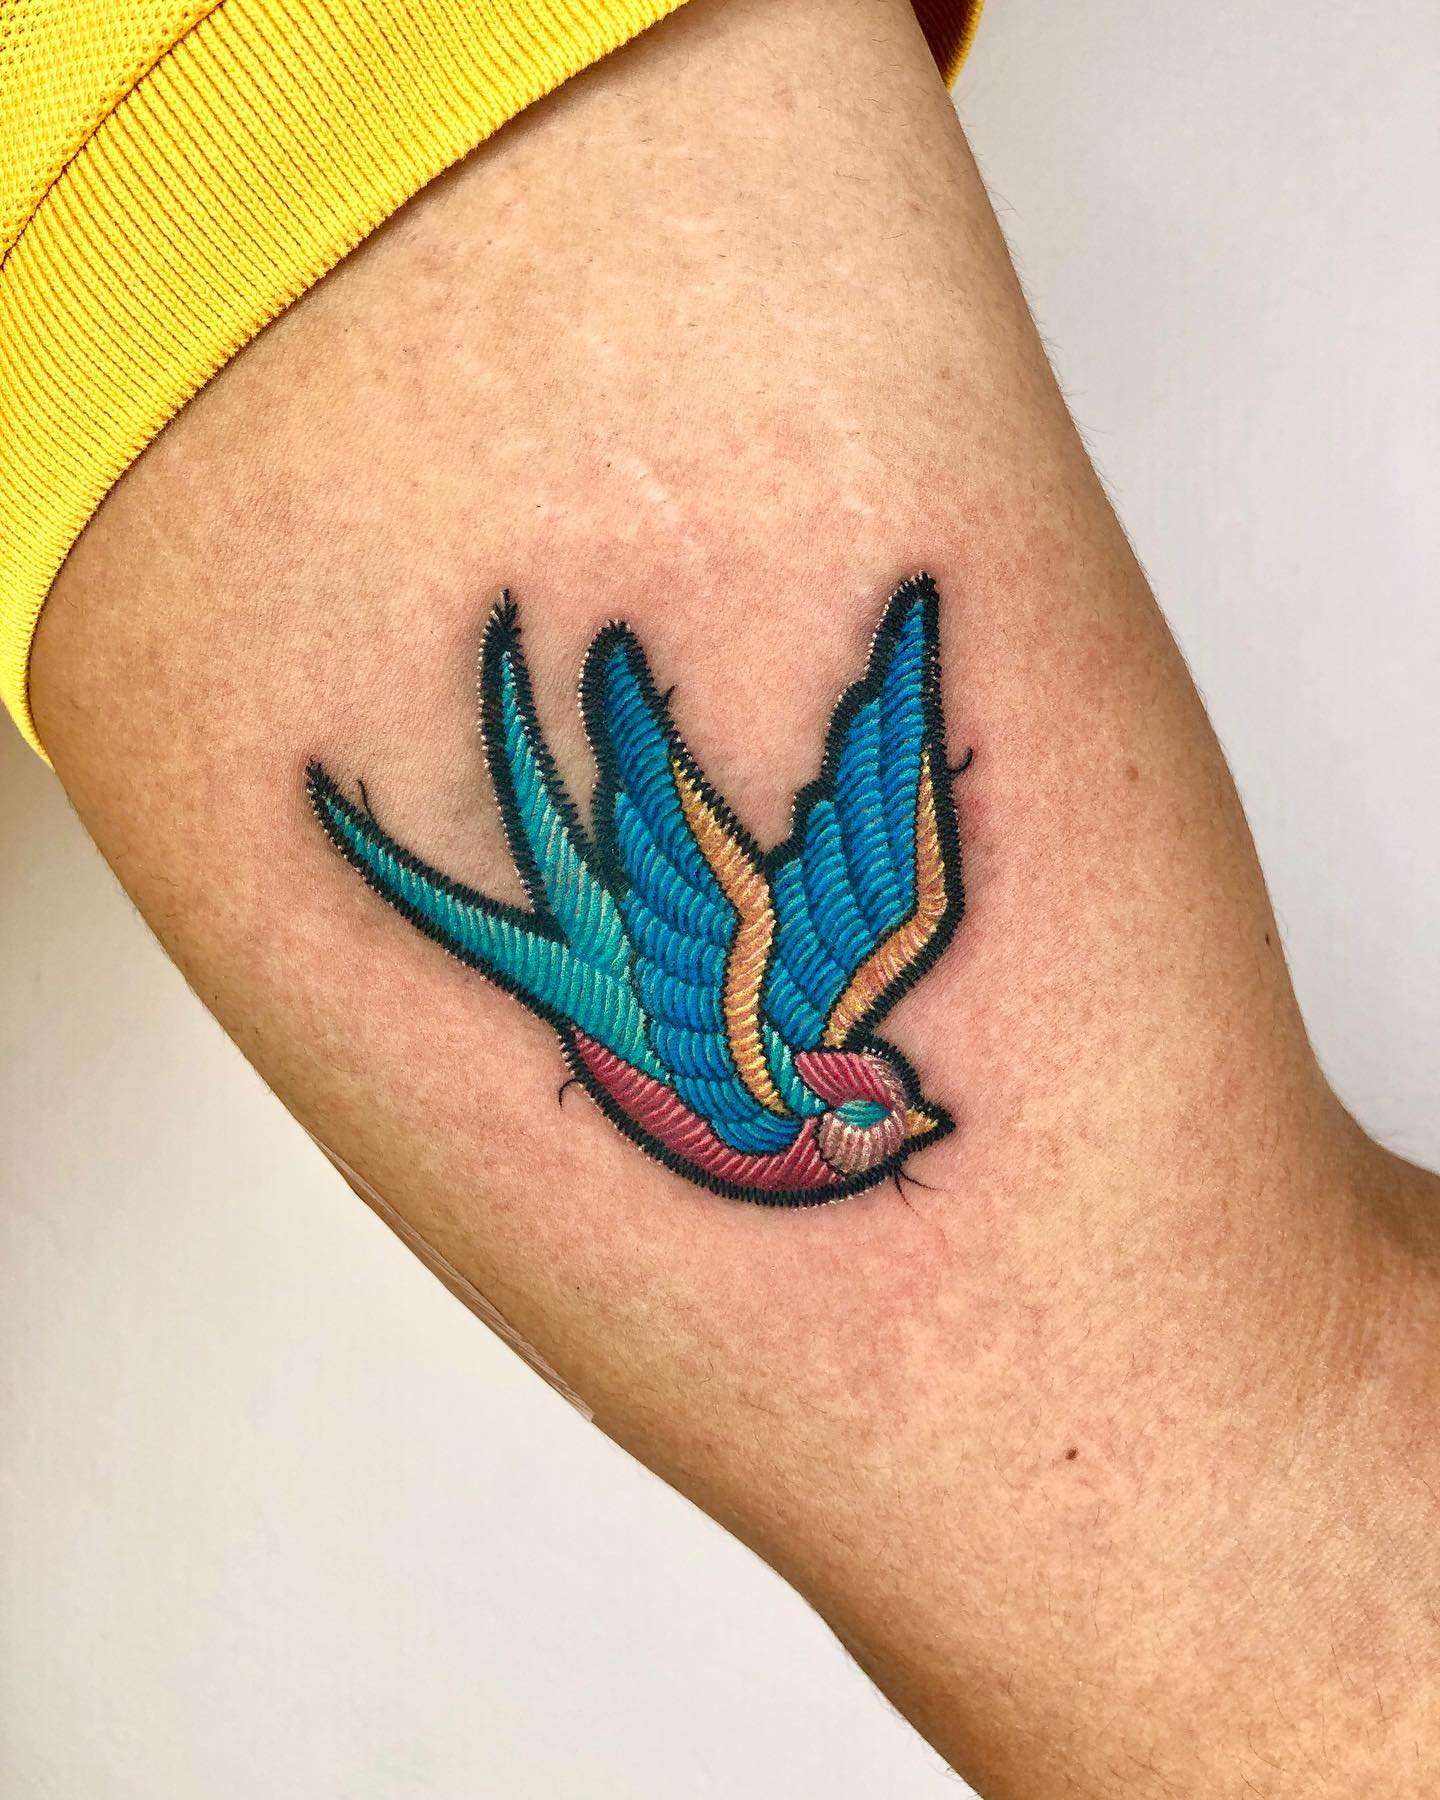 Tatuaż z latającym kolibrem w połączeniu starej szkoły i technik hafciarskich